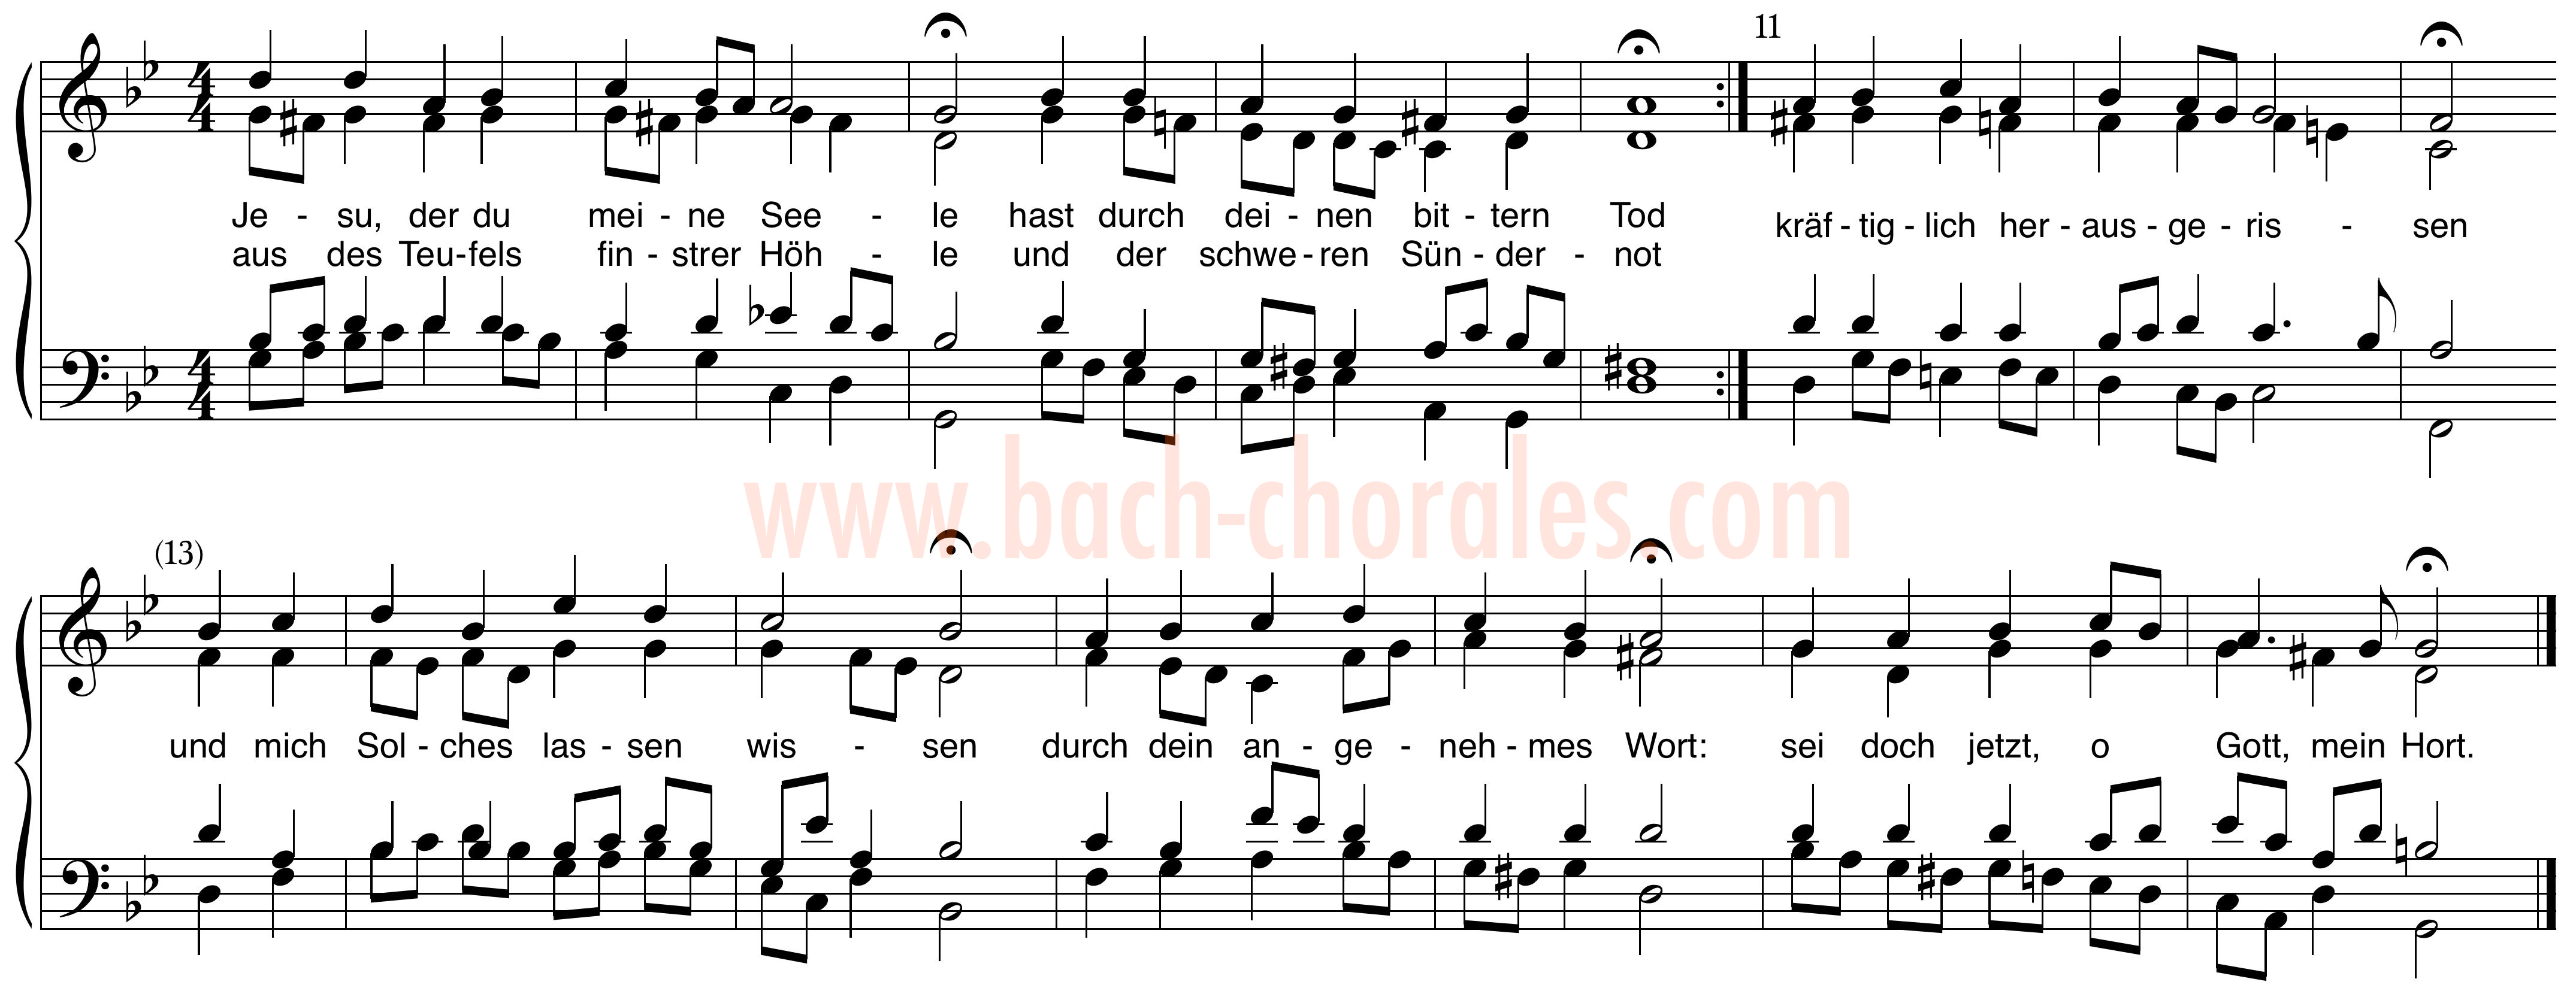 notenbeeld BWV 353 op https://www.bach-chorales.com/